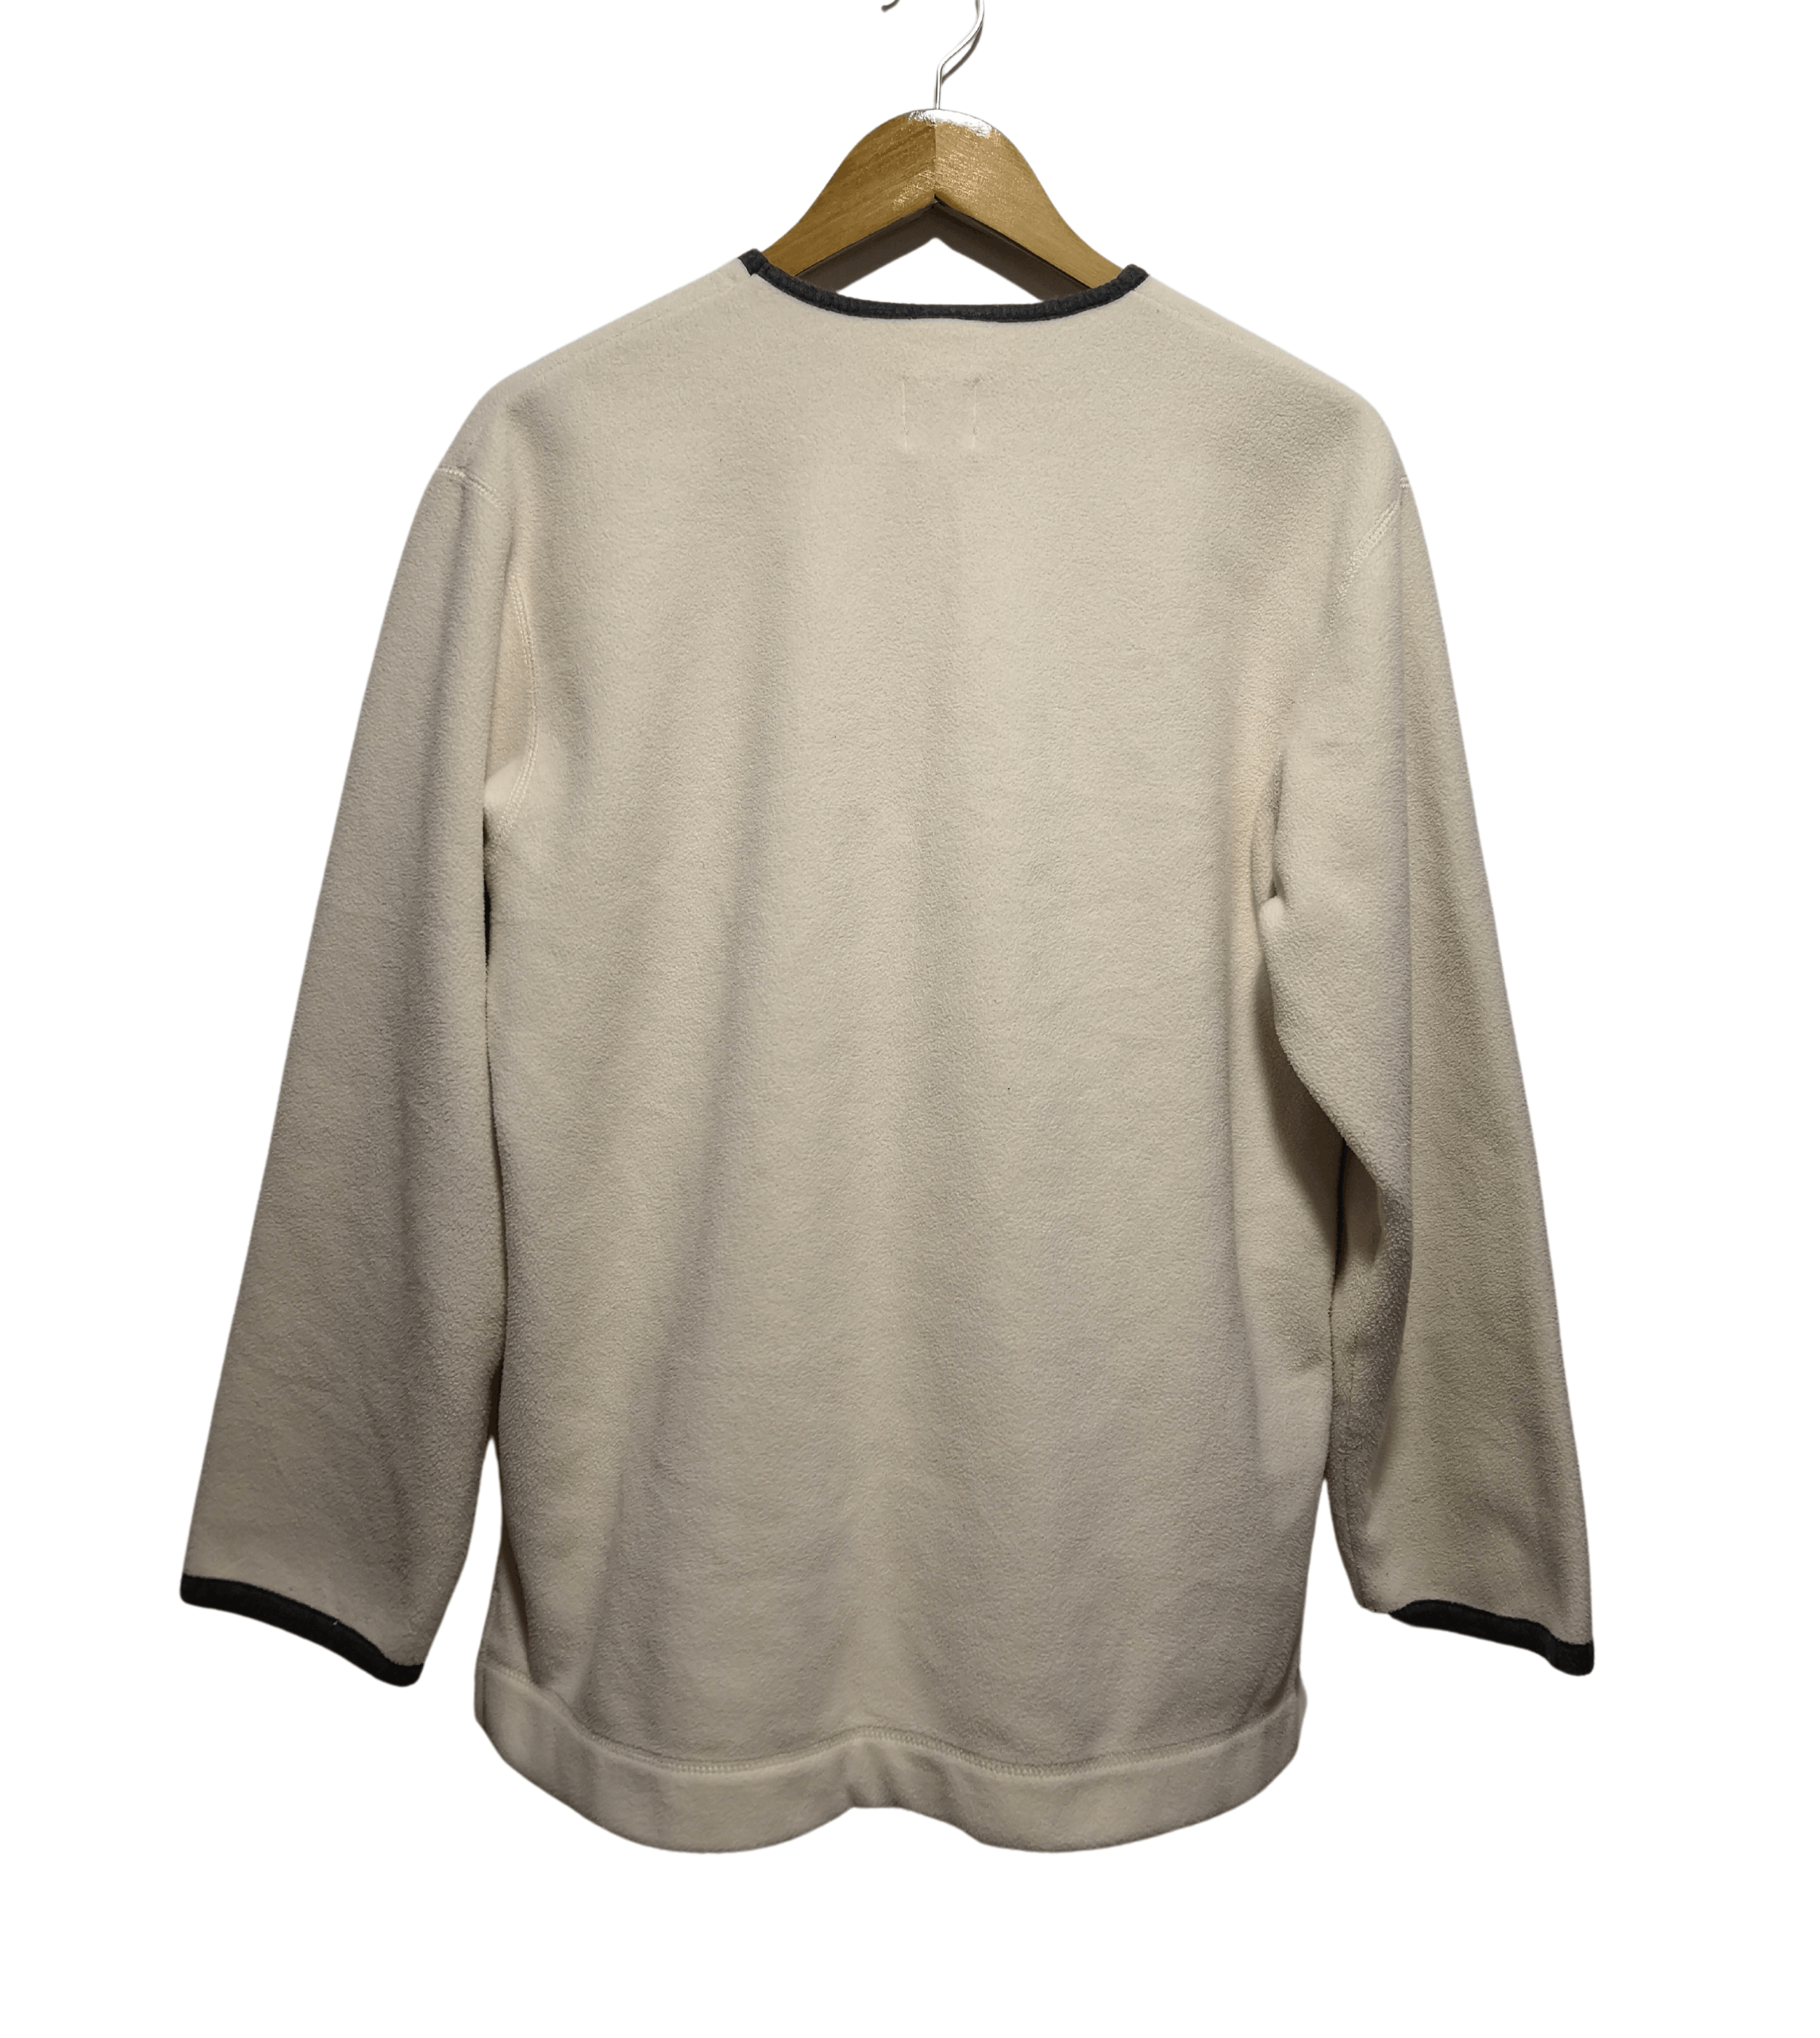 Vintage Hai Sporting Gear Half Zipper Fleece Sweatshirt - 2